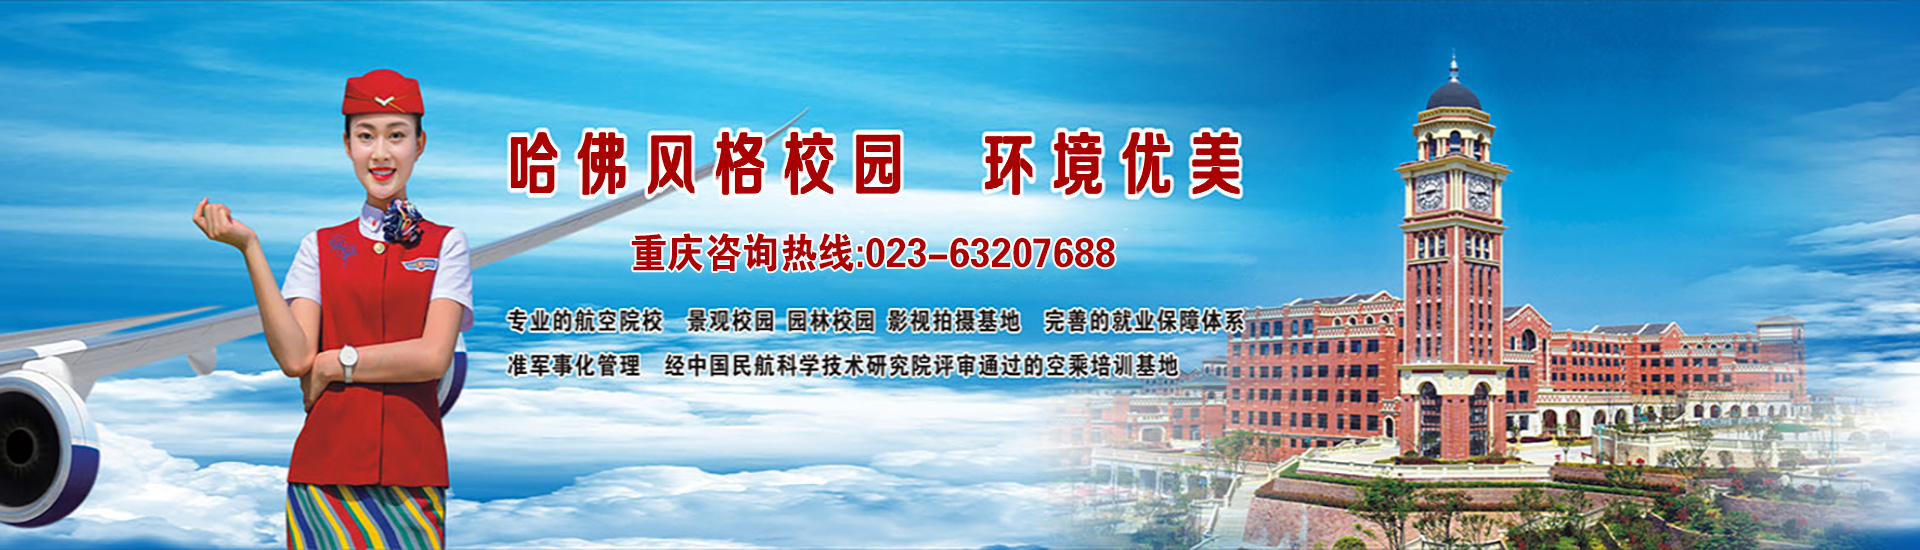 重庆航空学校排名